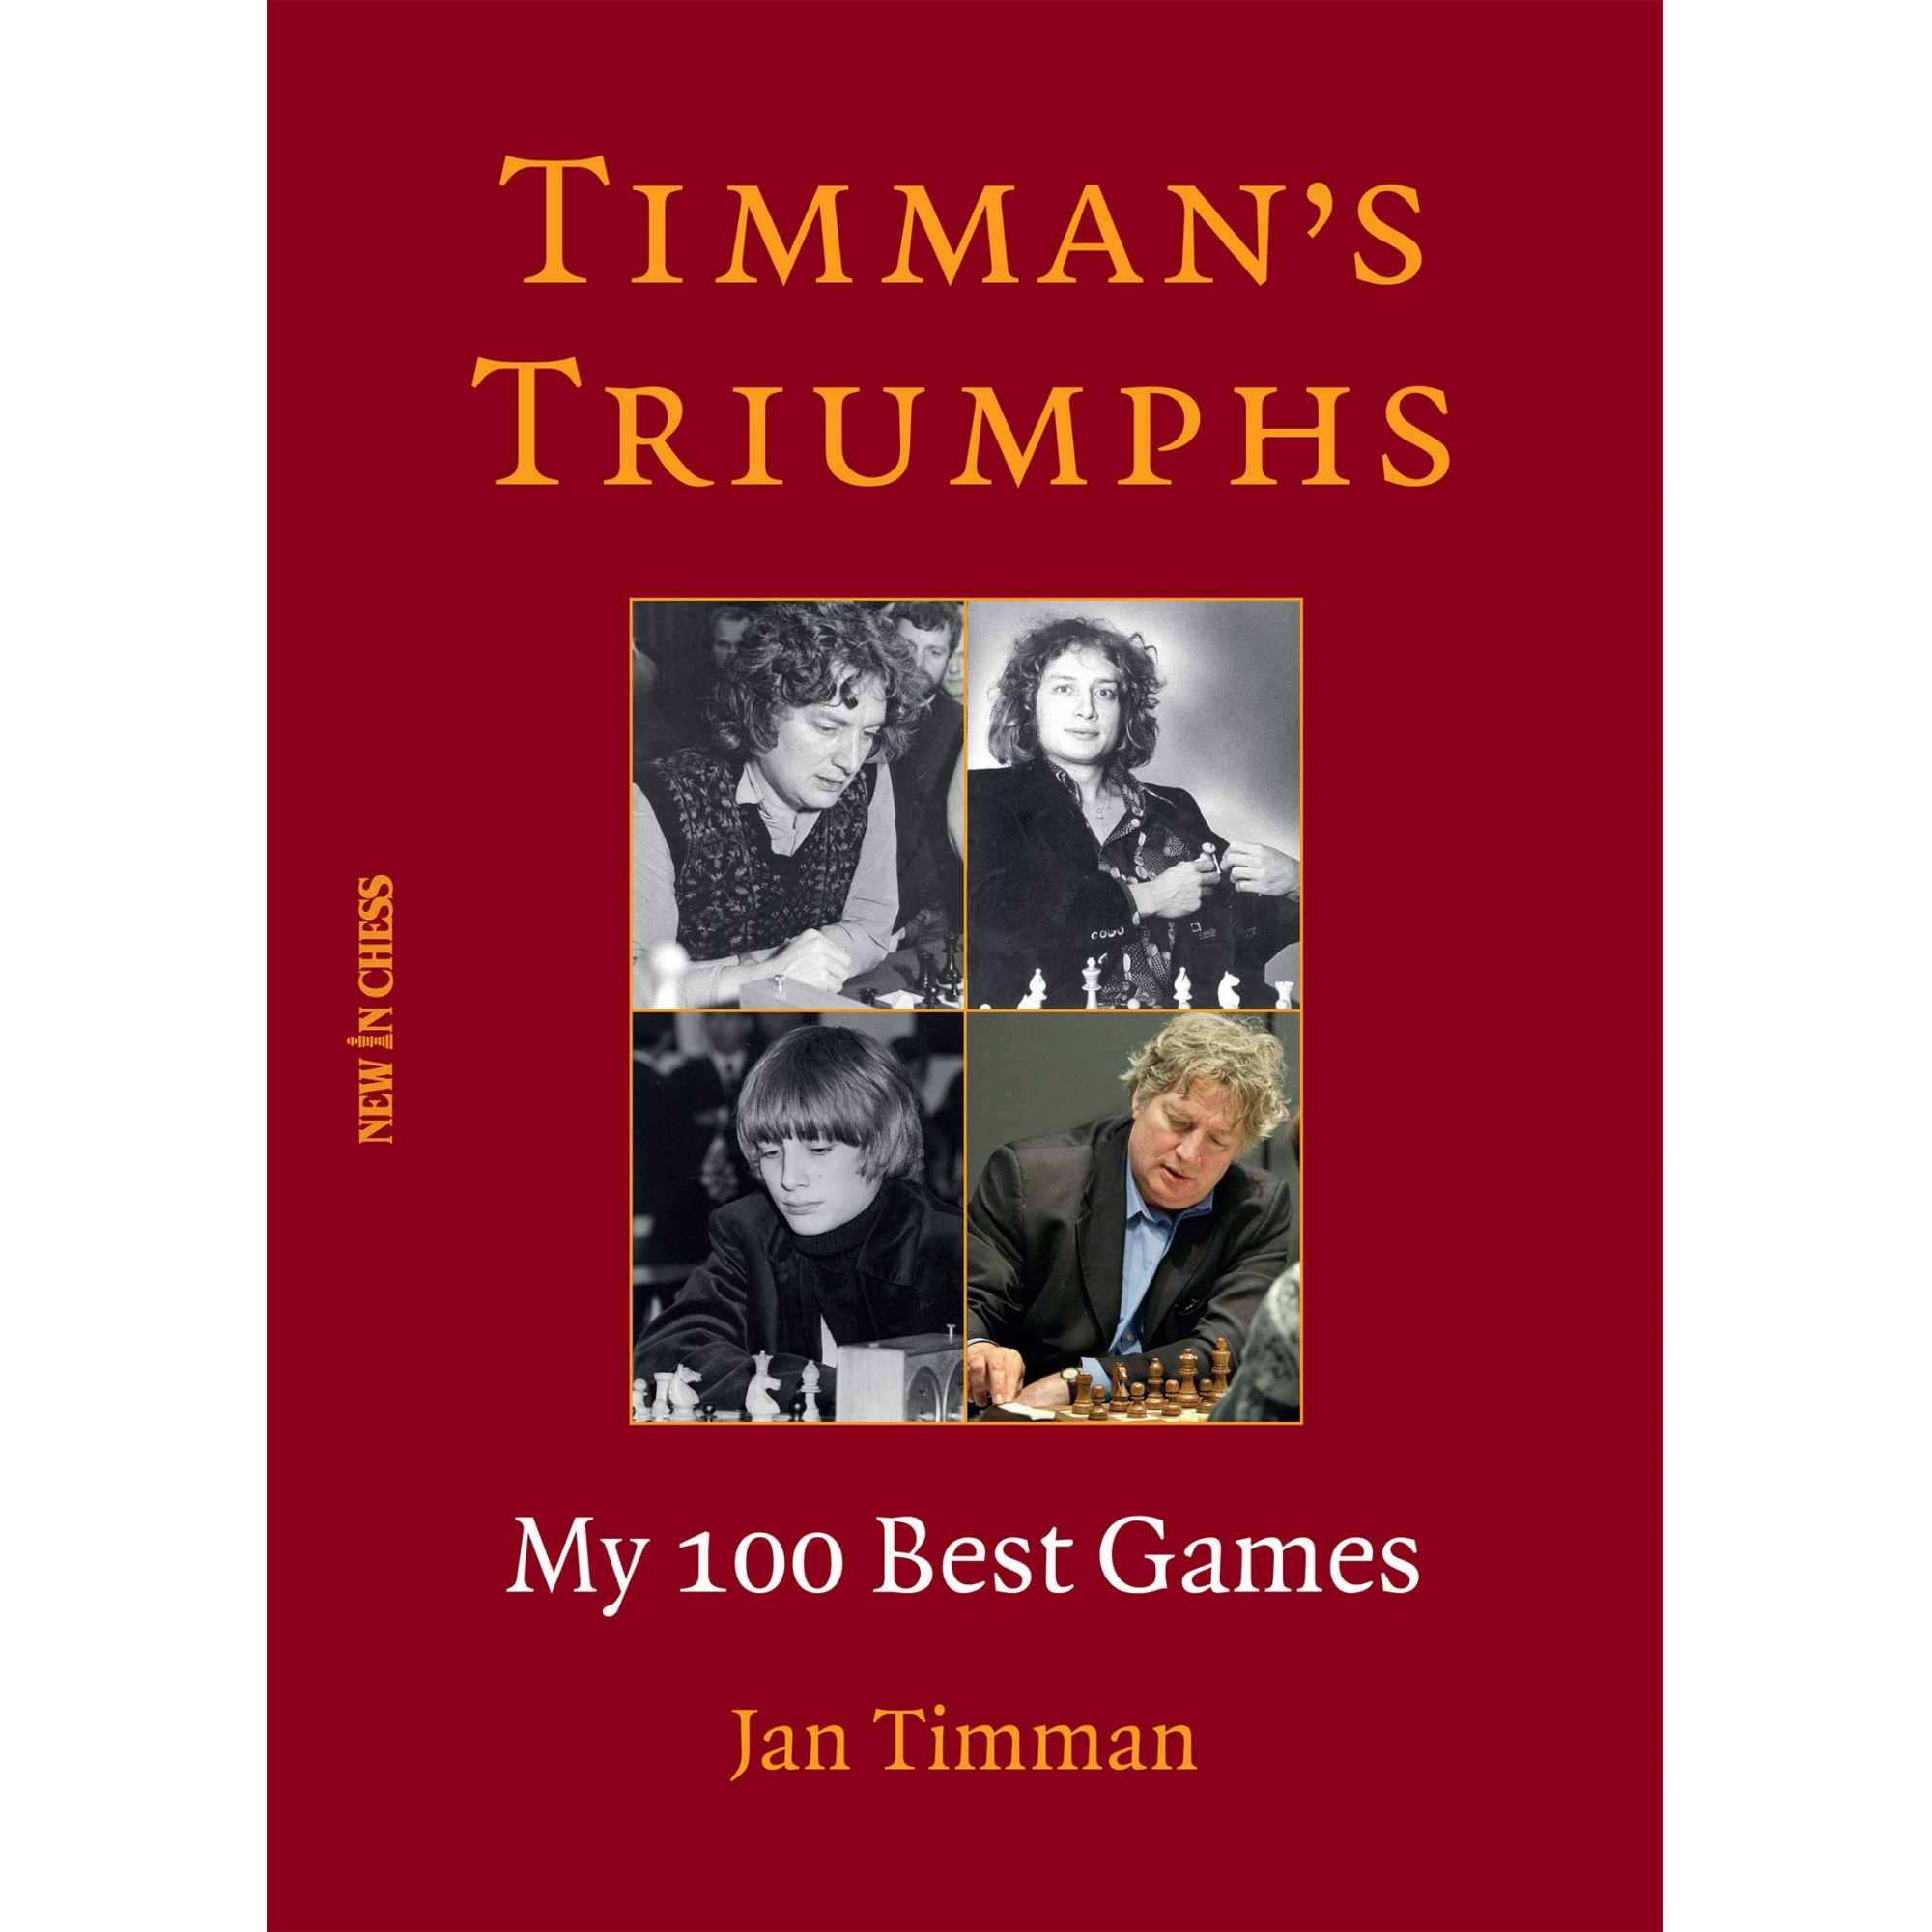 Timman's Triumphs: My 100 Best Games